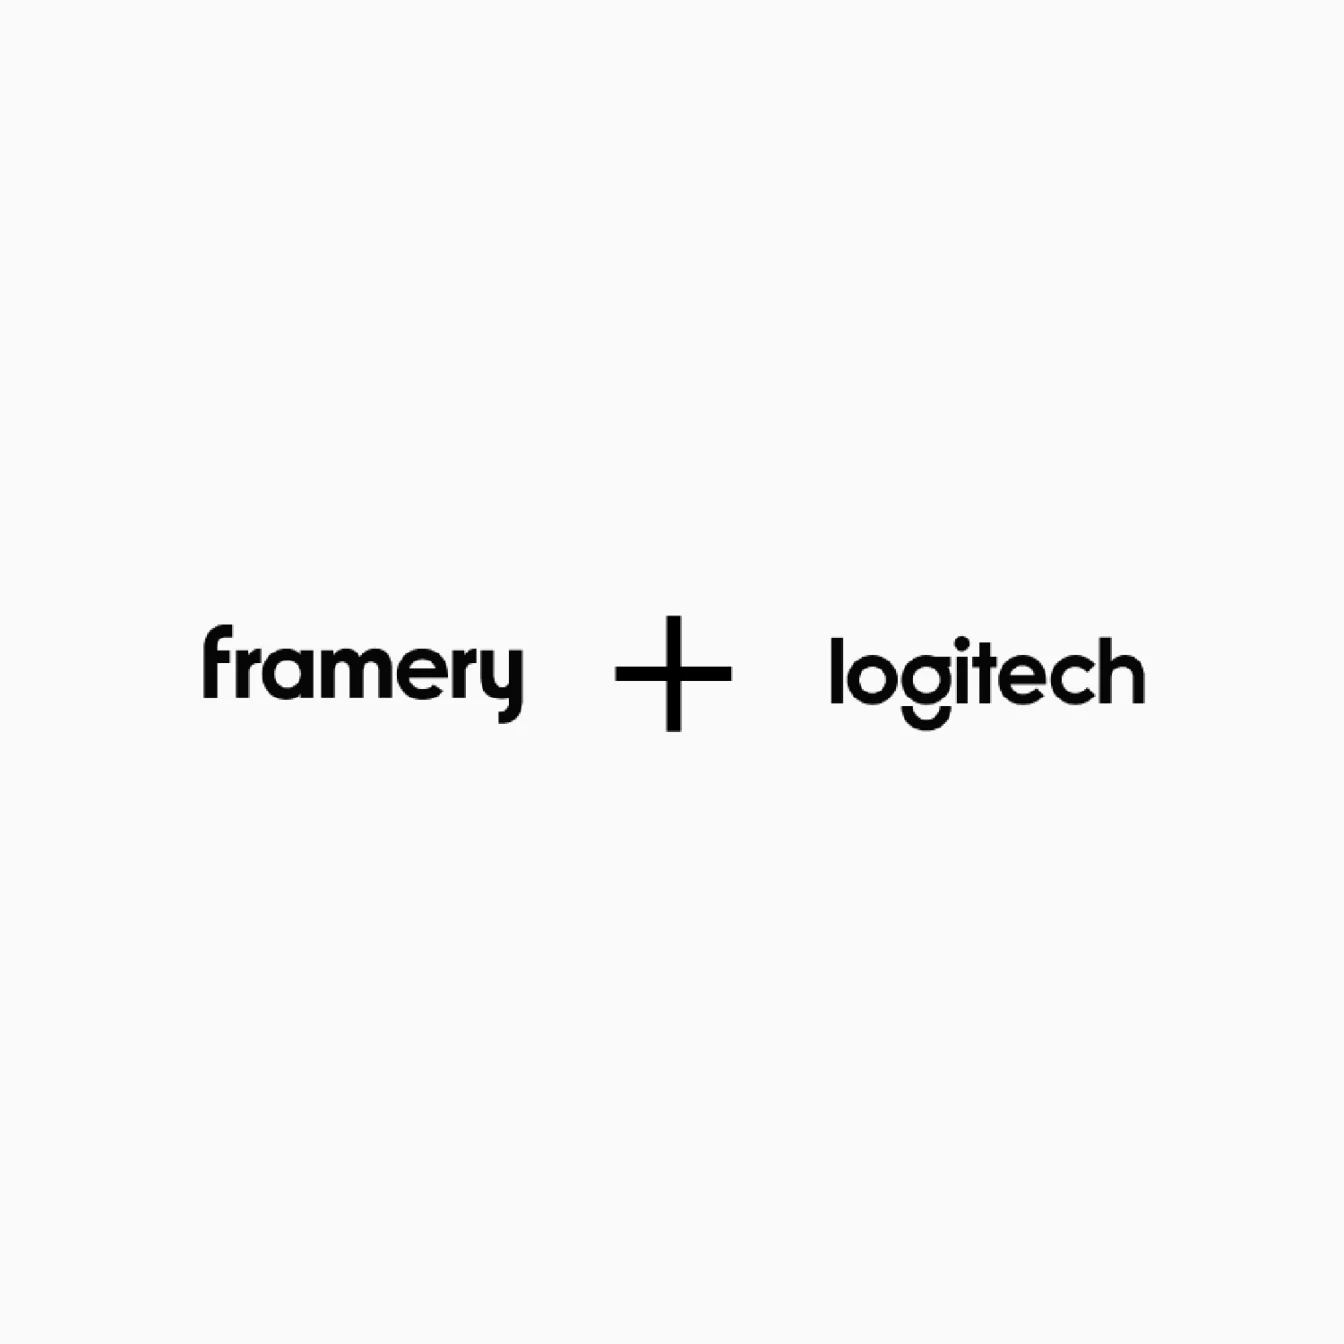 Framery and Logitech logos.